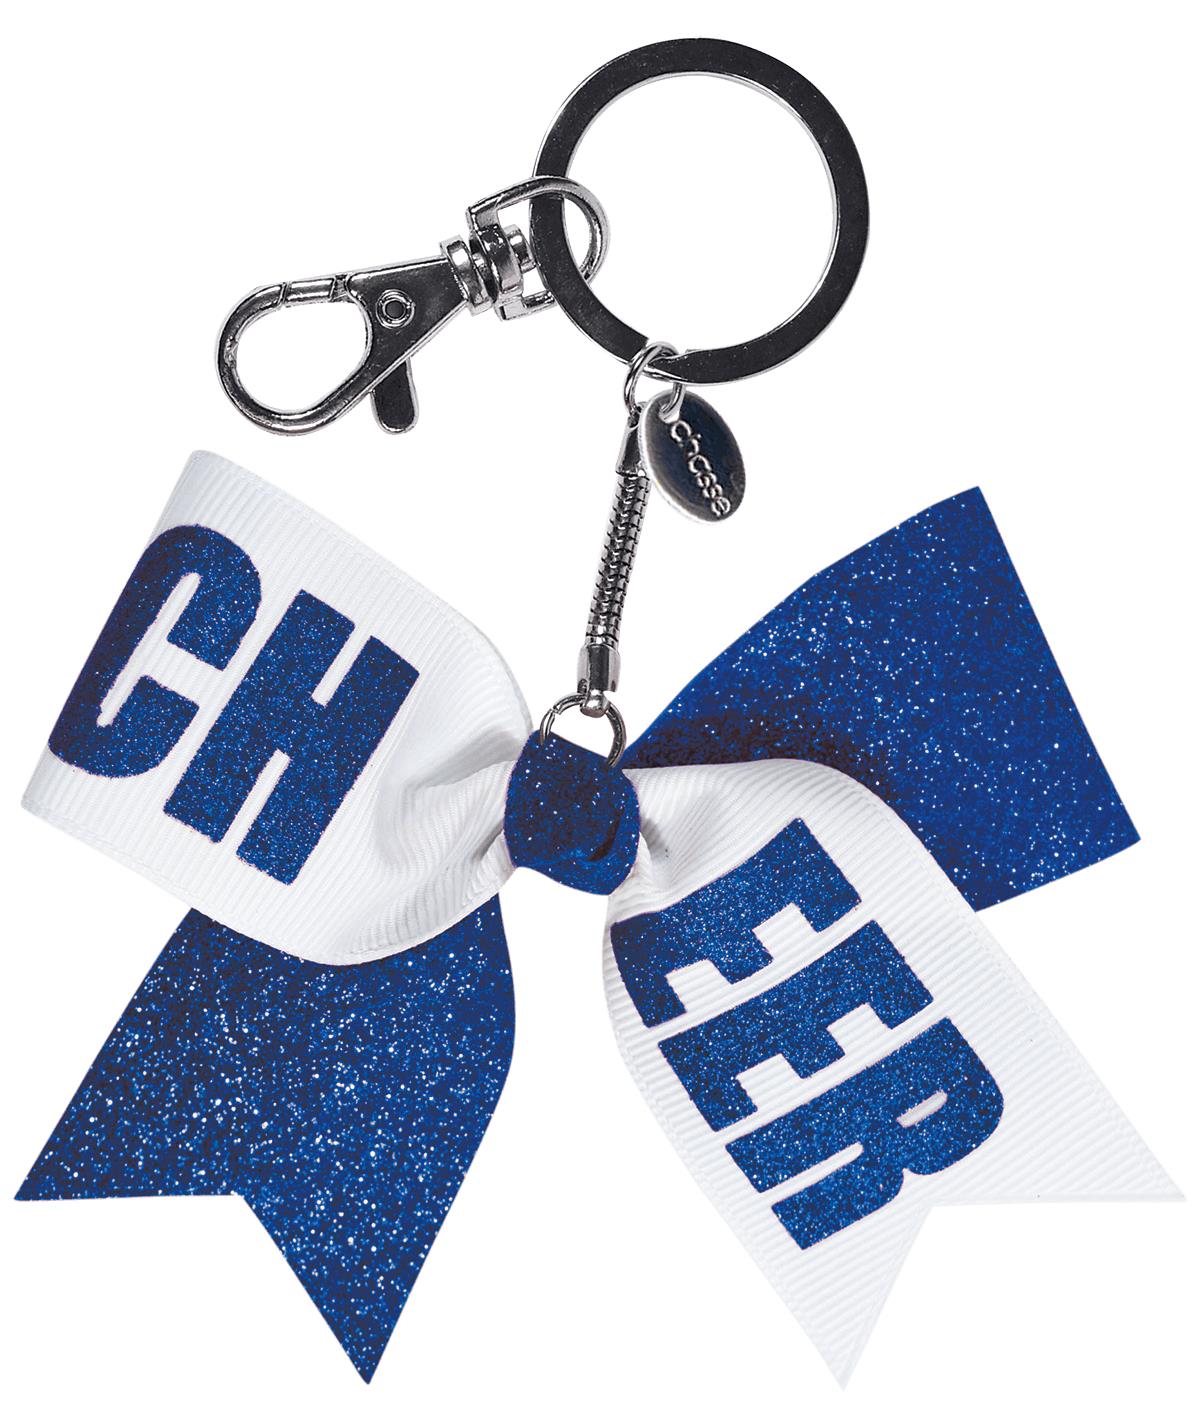 Chasse Mini Cheer Bow Keychain